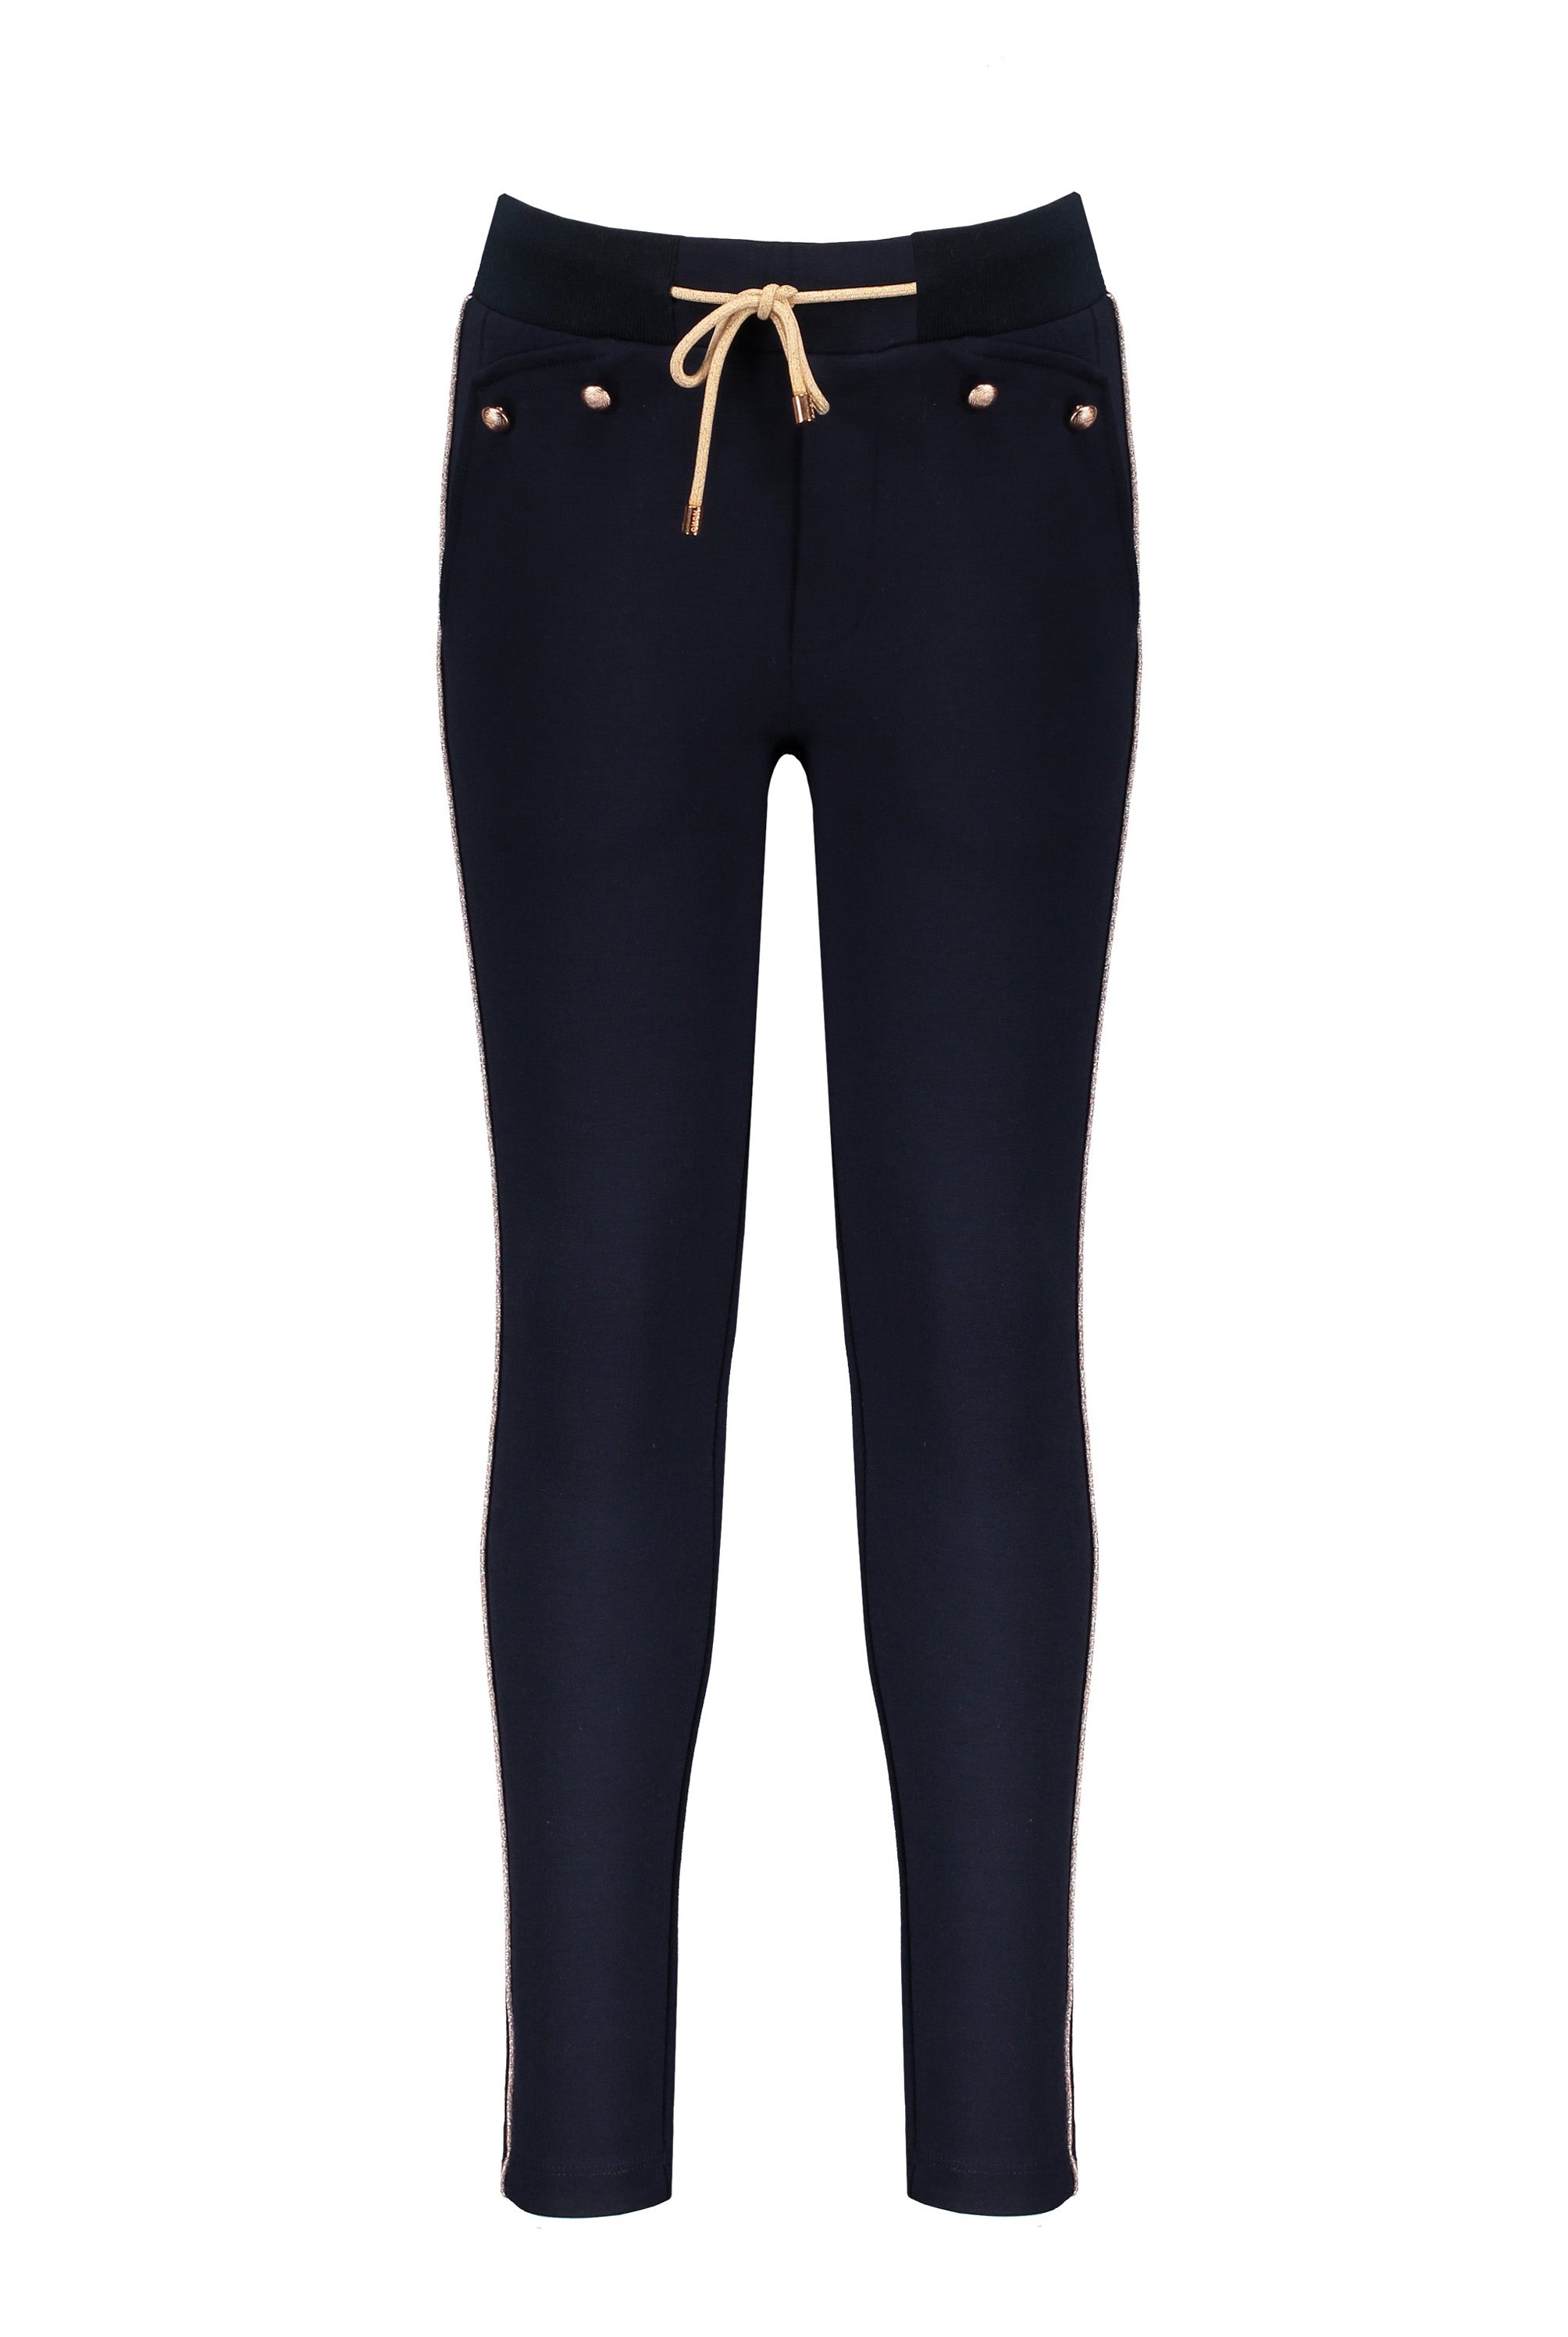 Meisjes Sessun solid pants with fancy pockets+buttons van NoNo in de kleur Navy Blazer in maat 146/152.